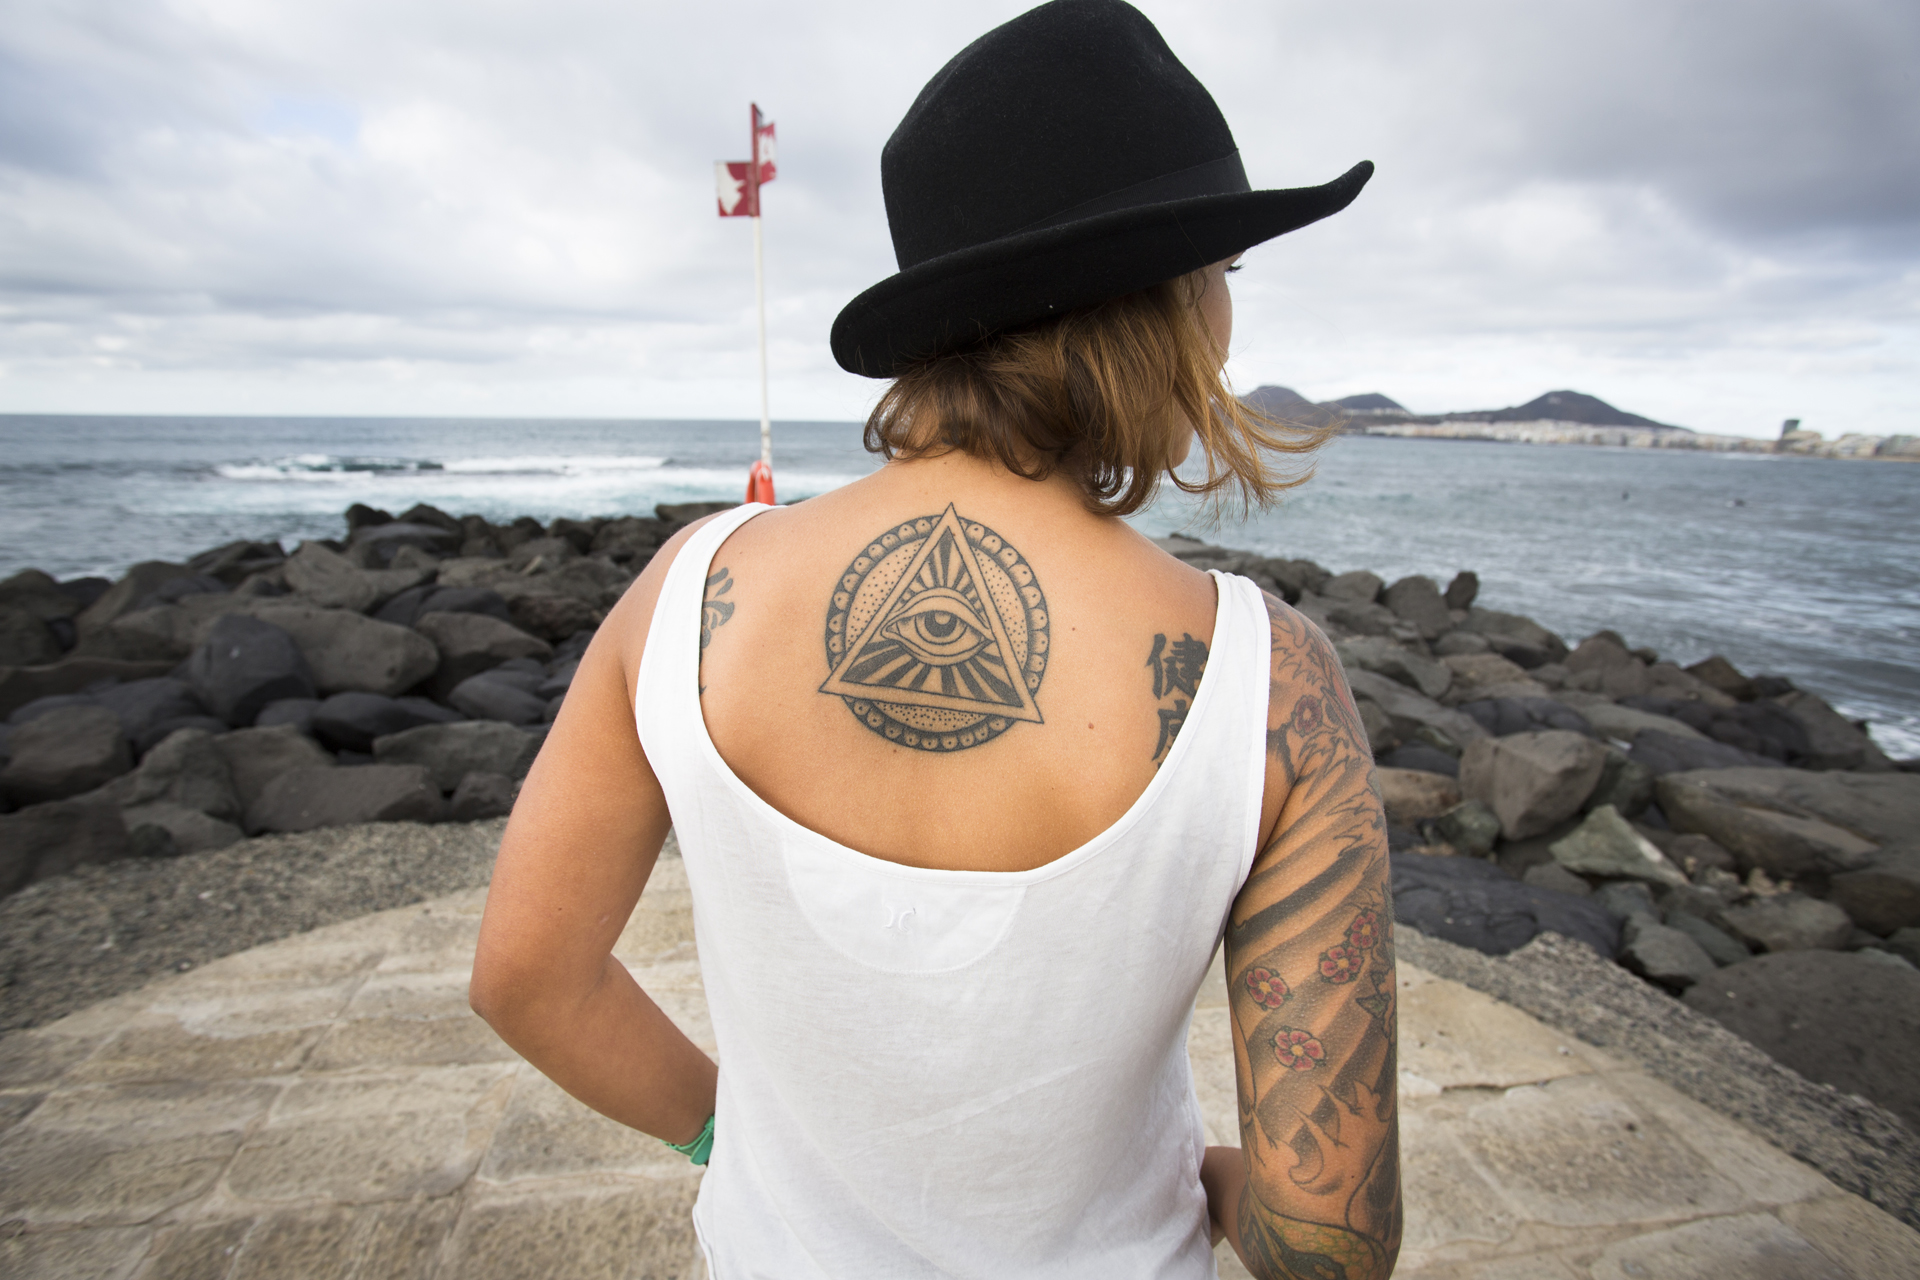 Tattoo. Provokation unter der Haut - 7 Islands Magazine